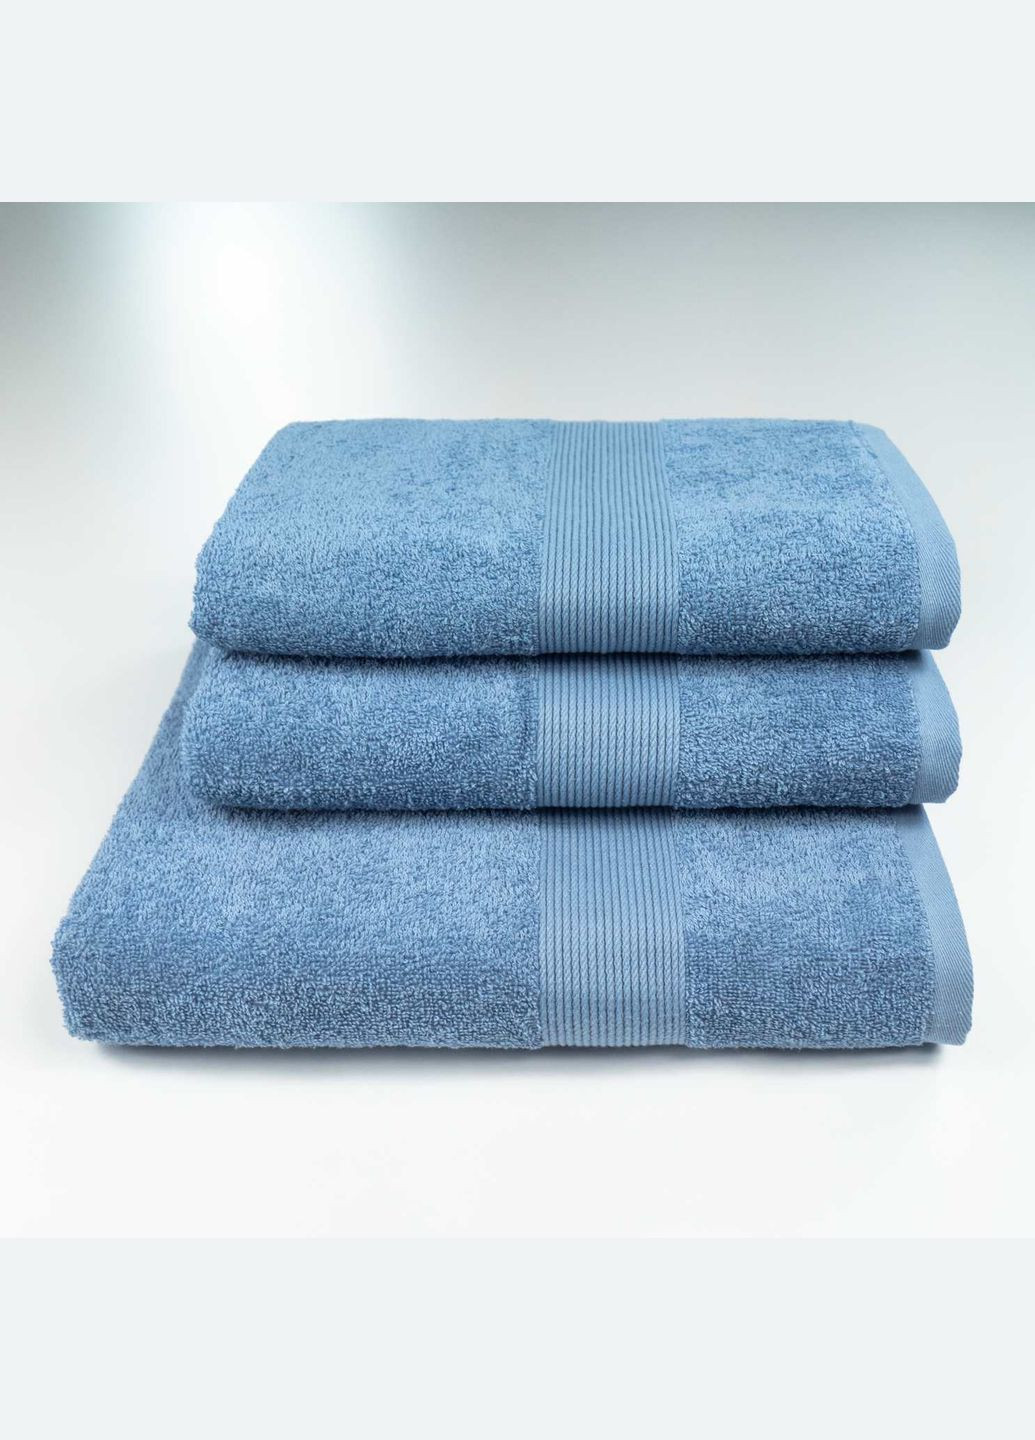 GM Textile набор махровых полотенец с бордюром 3шт 50х90см, 50х90см, 70х140см 400г/м2 () синий производство -